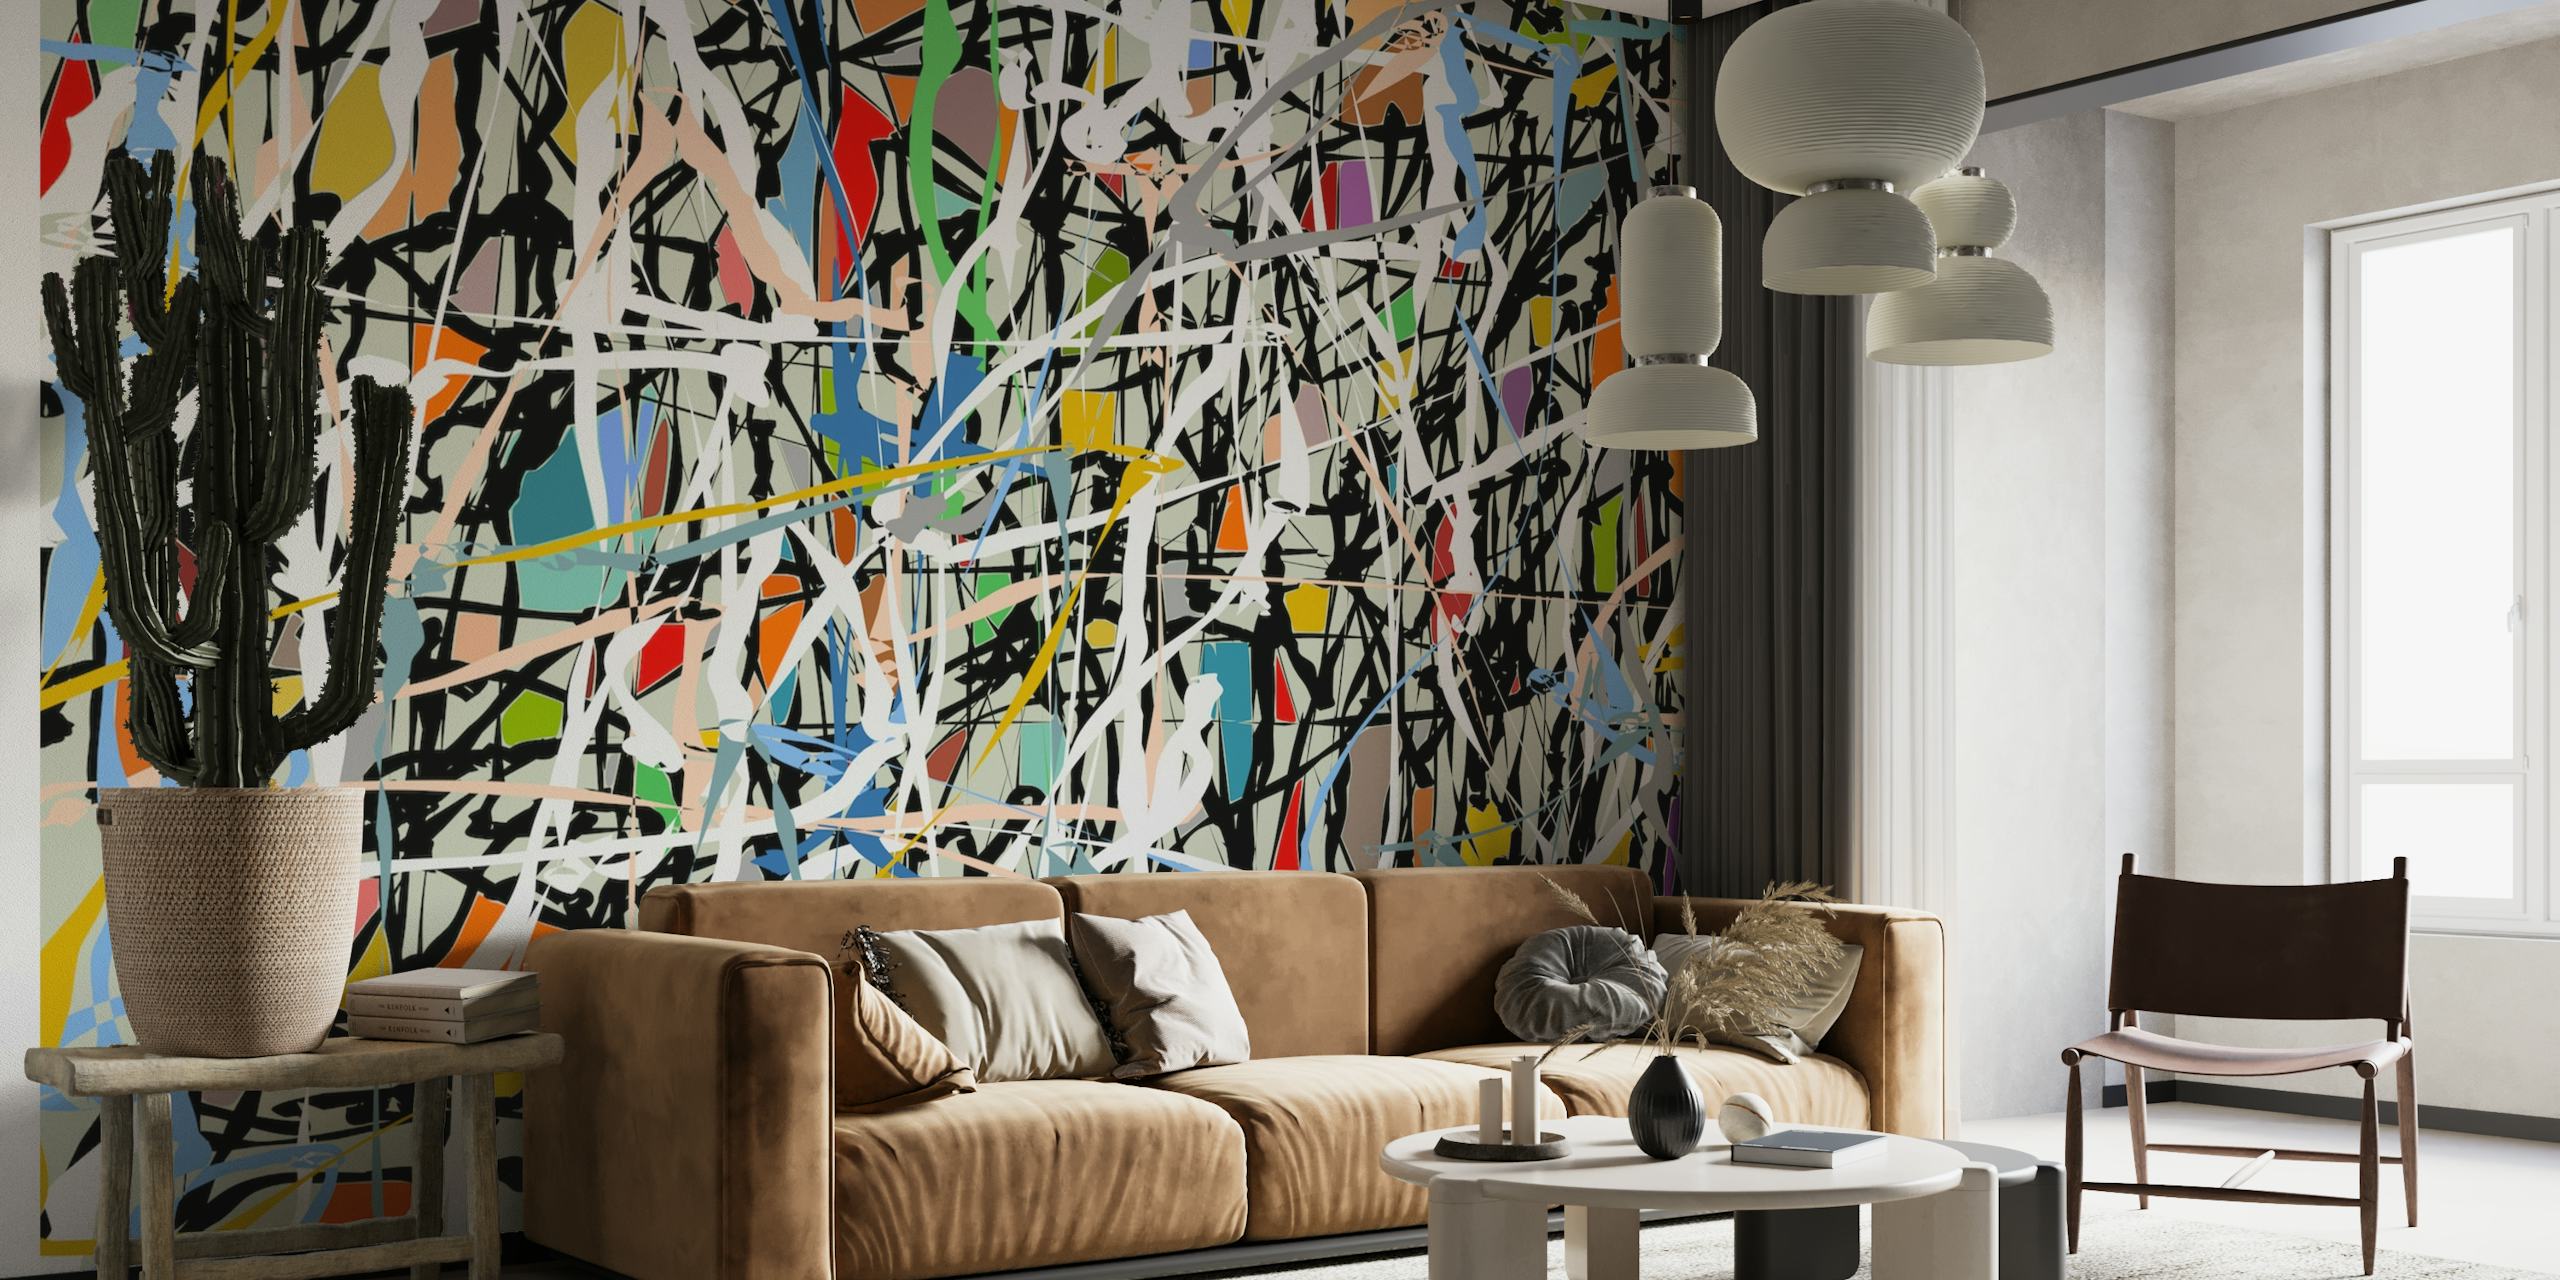 Mural de parede em estilo expressionista abstrato com respingos vibrantes e traços ousados semelhantes às obras de arte de Pollock